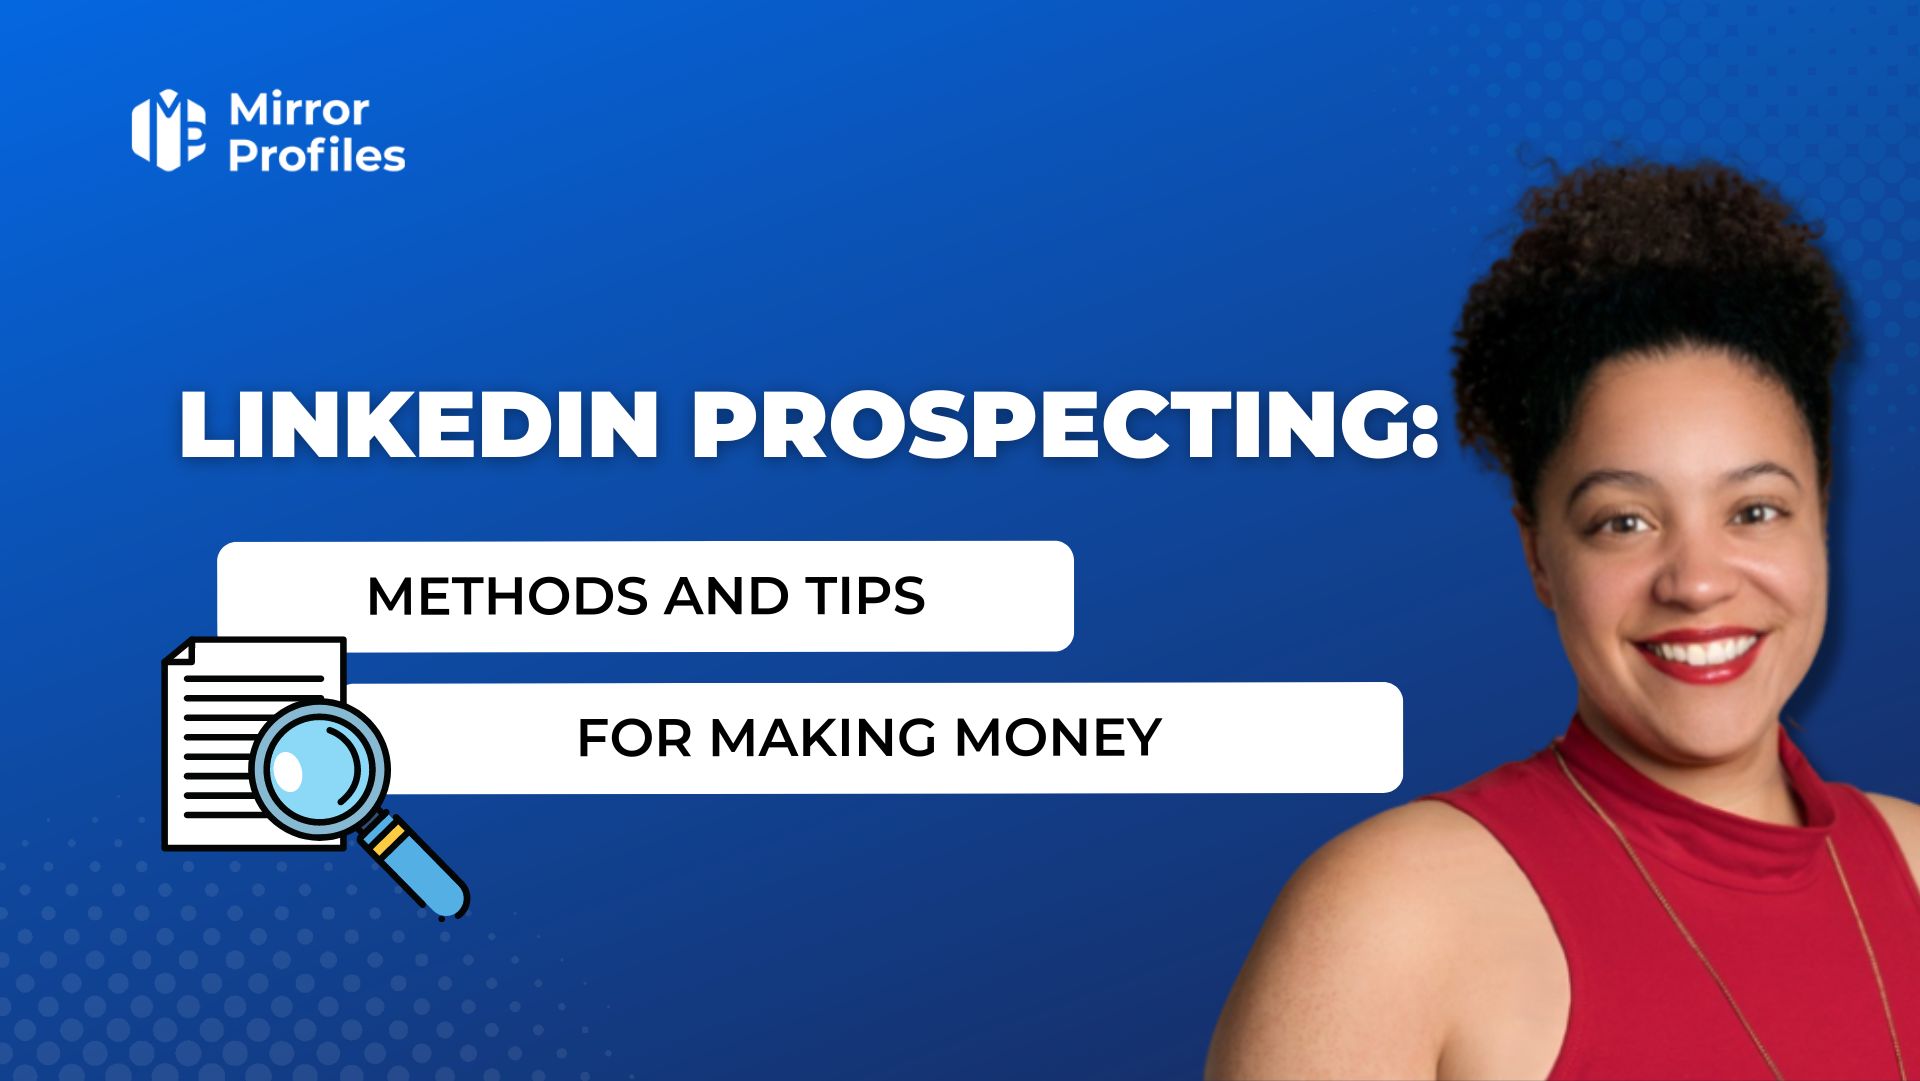 Linkedin prospecting: Methods and tips for making money